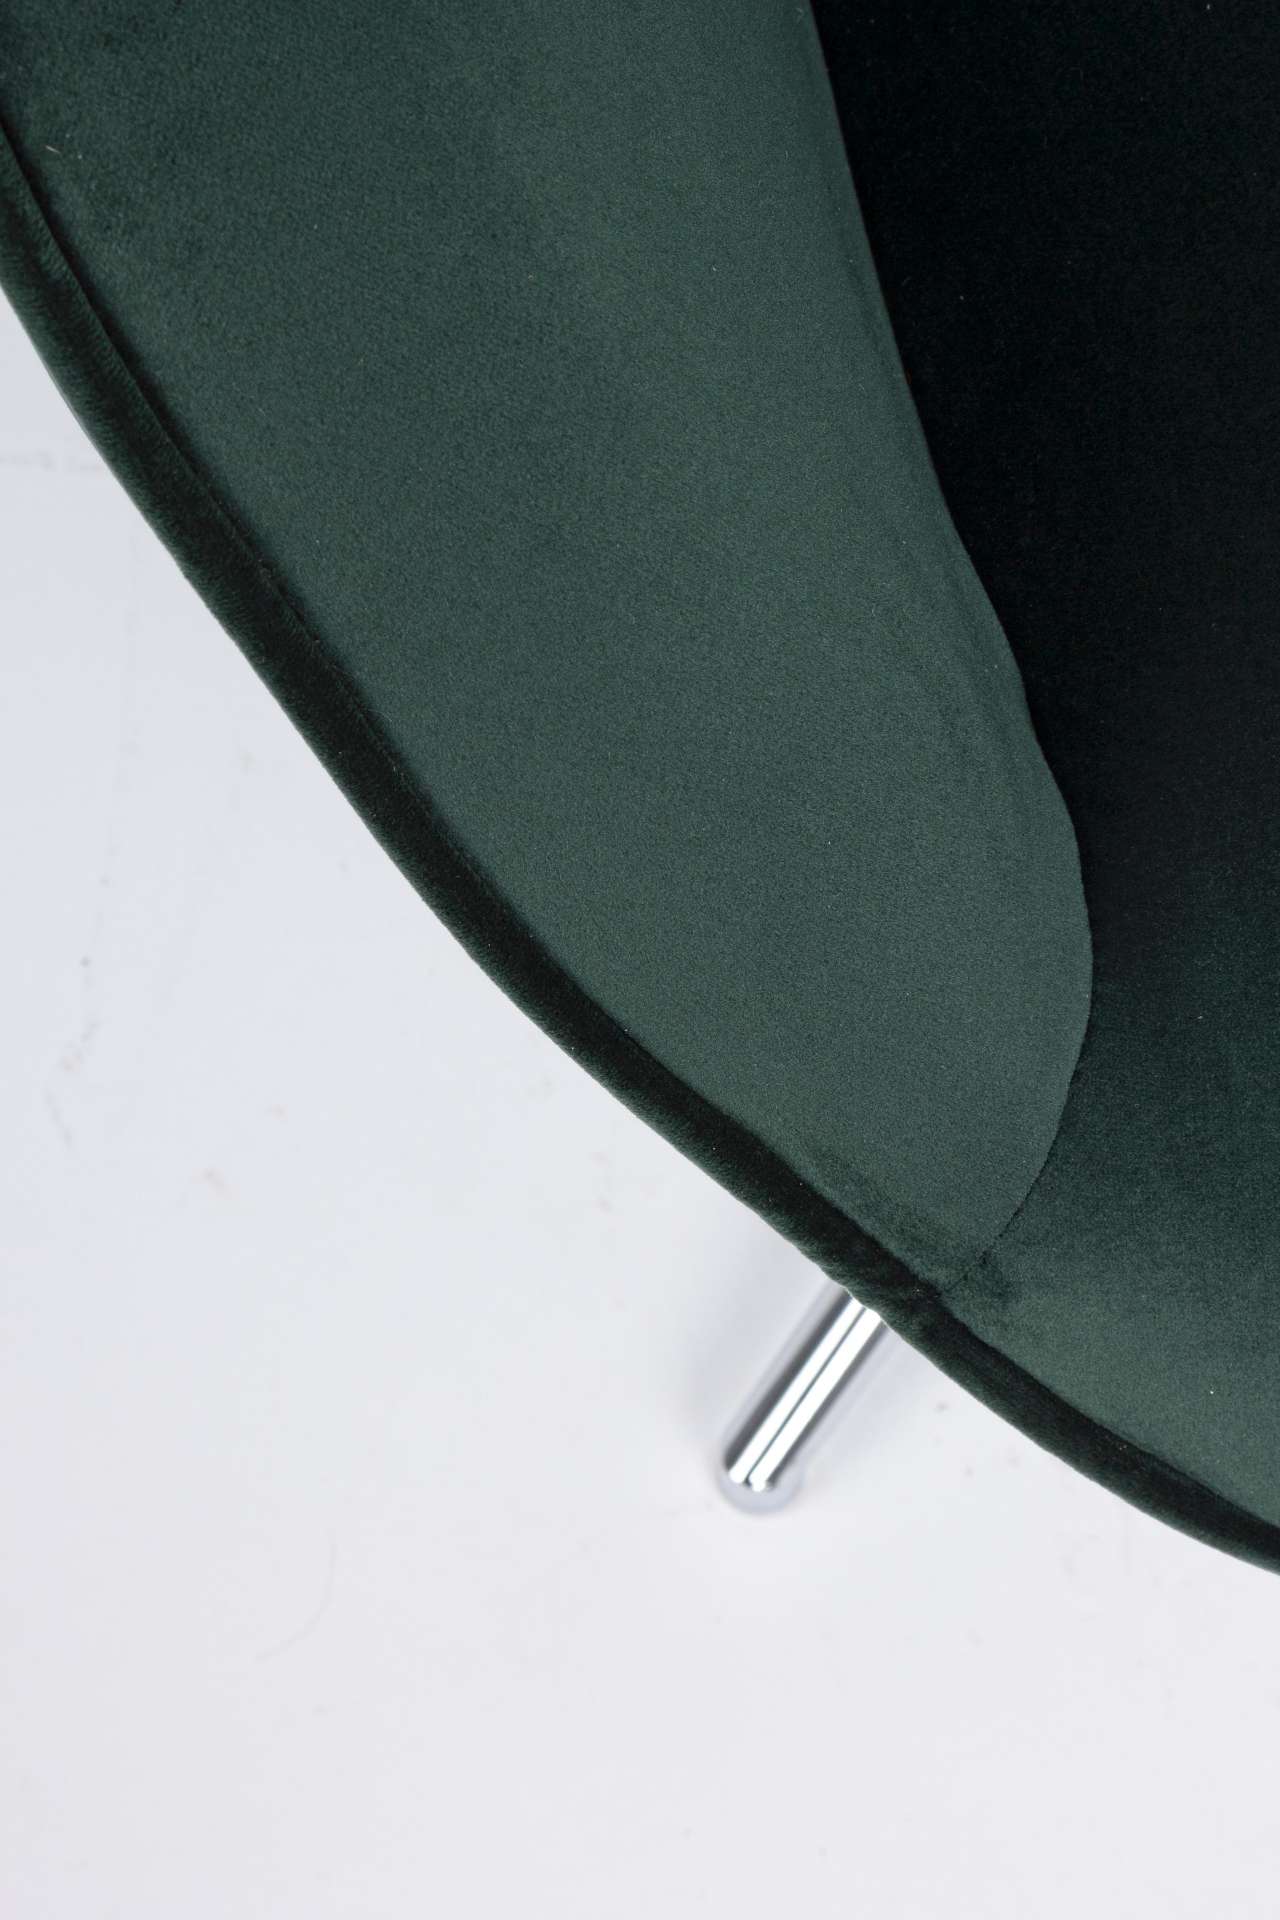 Der Sessel Farida überzeugt mit seinem modernen Design. Gefertigt wurde er aus Samt, welcher einen grünen Farbton besitzt. Das Gestell ist aus Metall und hat eine silberne Farbe. Der Sessel besitzt eine Sitzhöhe von 45 cm. Die Breite beträgt 69 cm. Der Se